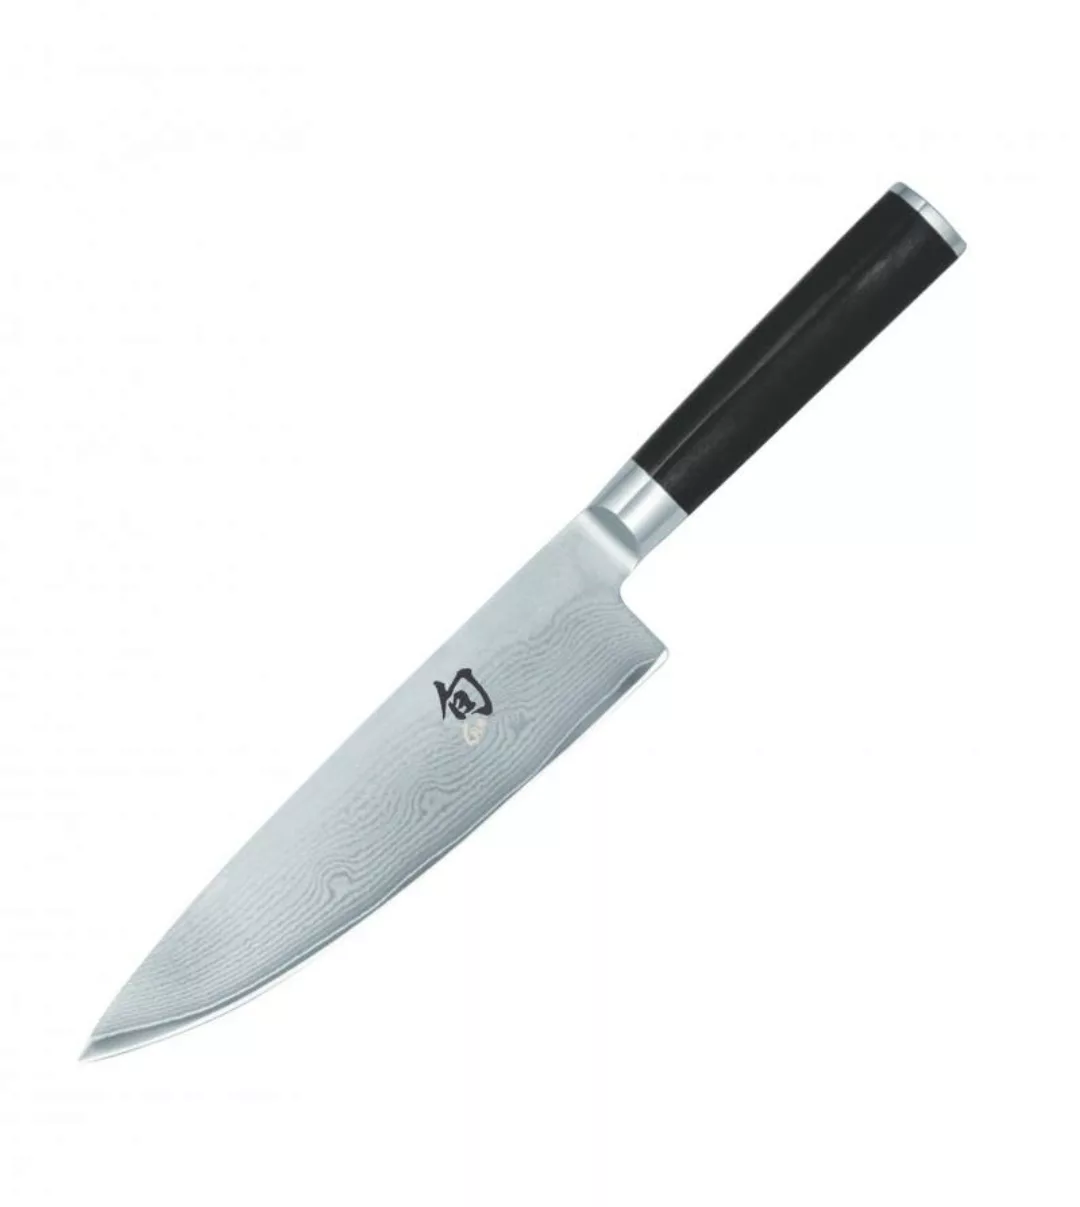 KAI Shun Classic Linkshand-Kochmesser 20 cm - Damaststahl - Griff Pakkaholz günstig online kaufen